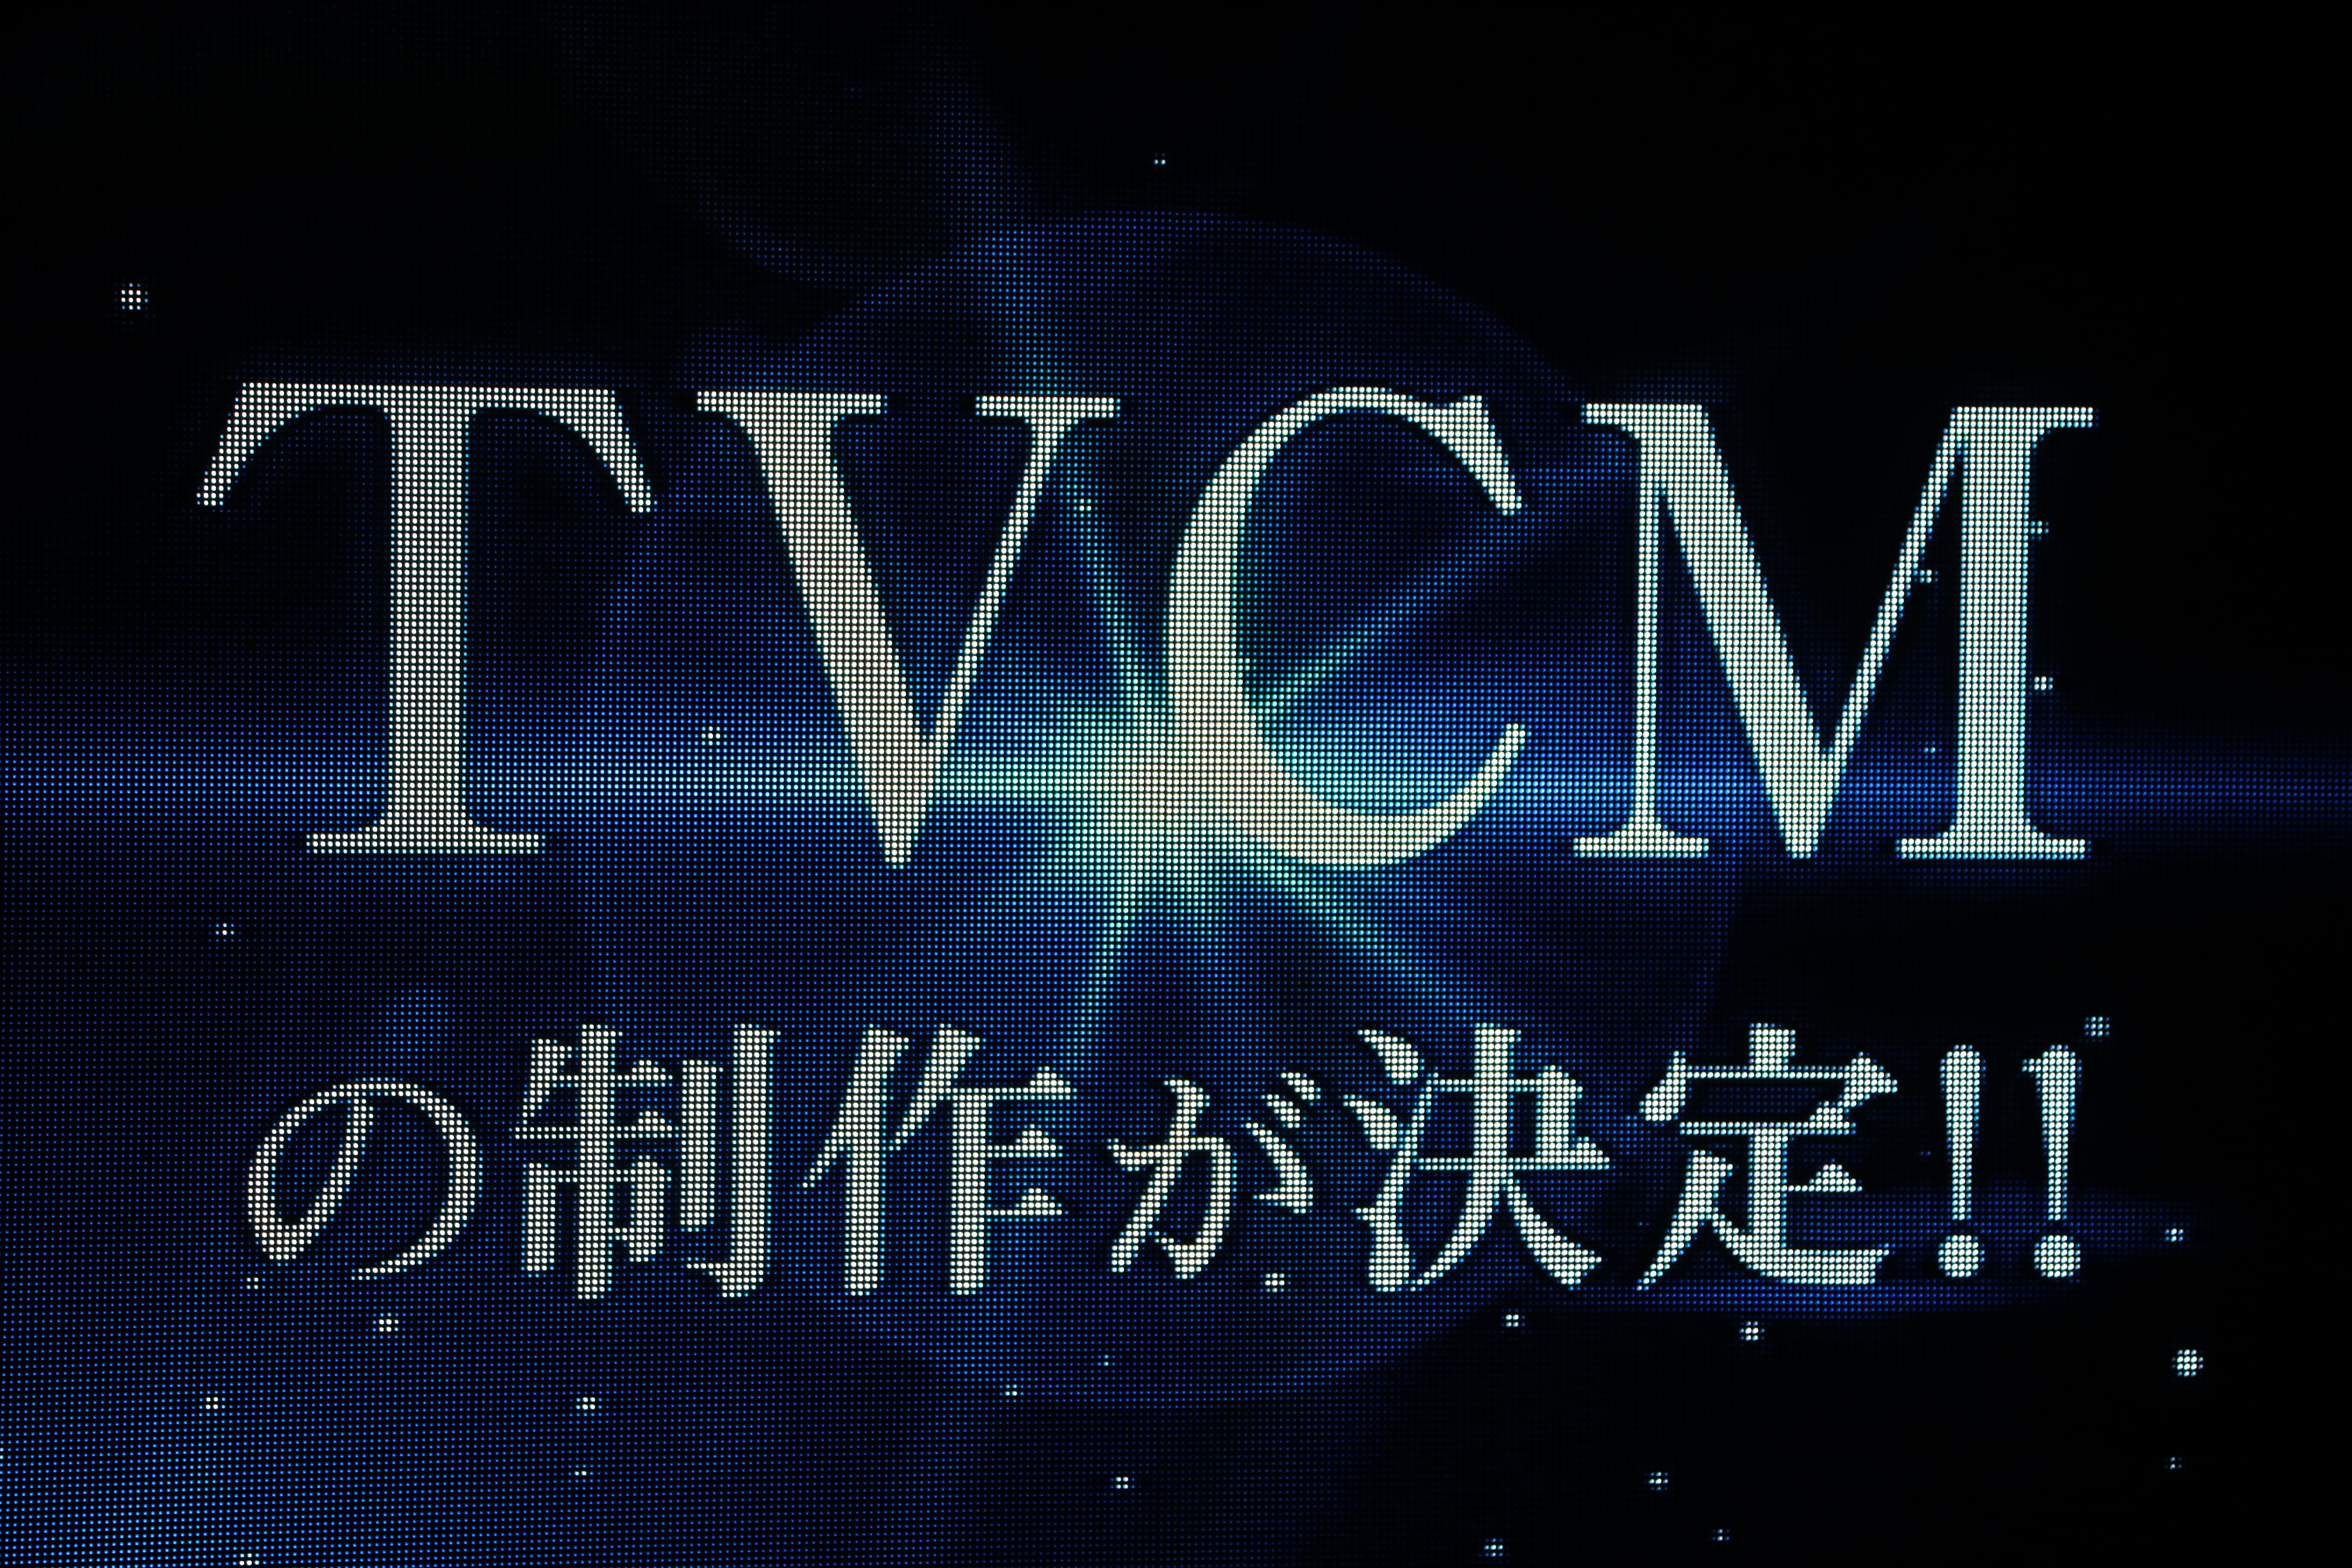 チーム8結成5周年コンサートでTVCM出演決定がサプライズ発表